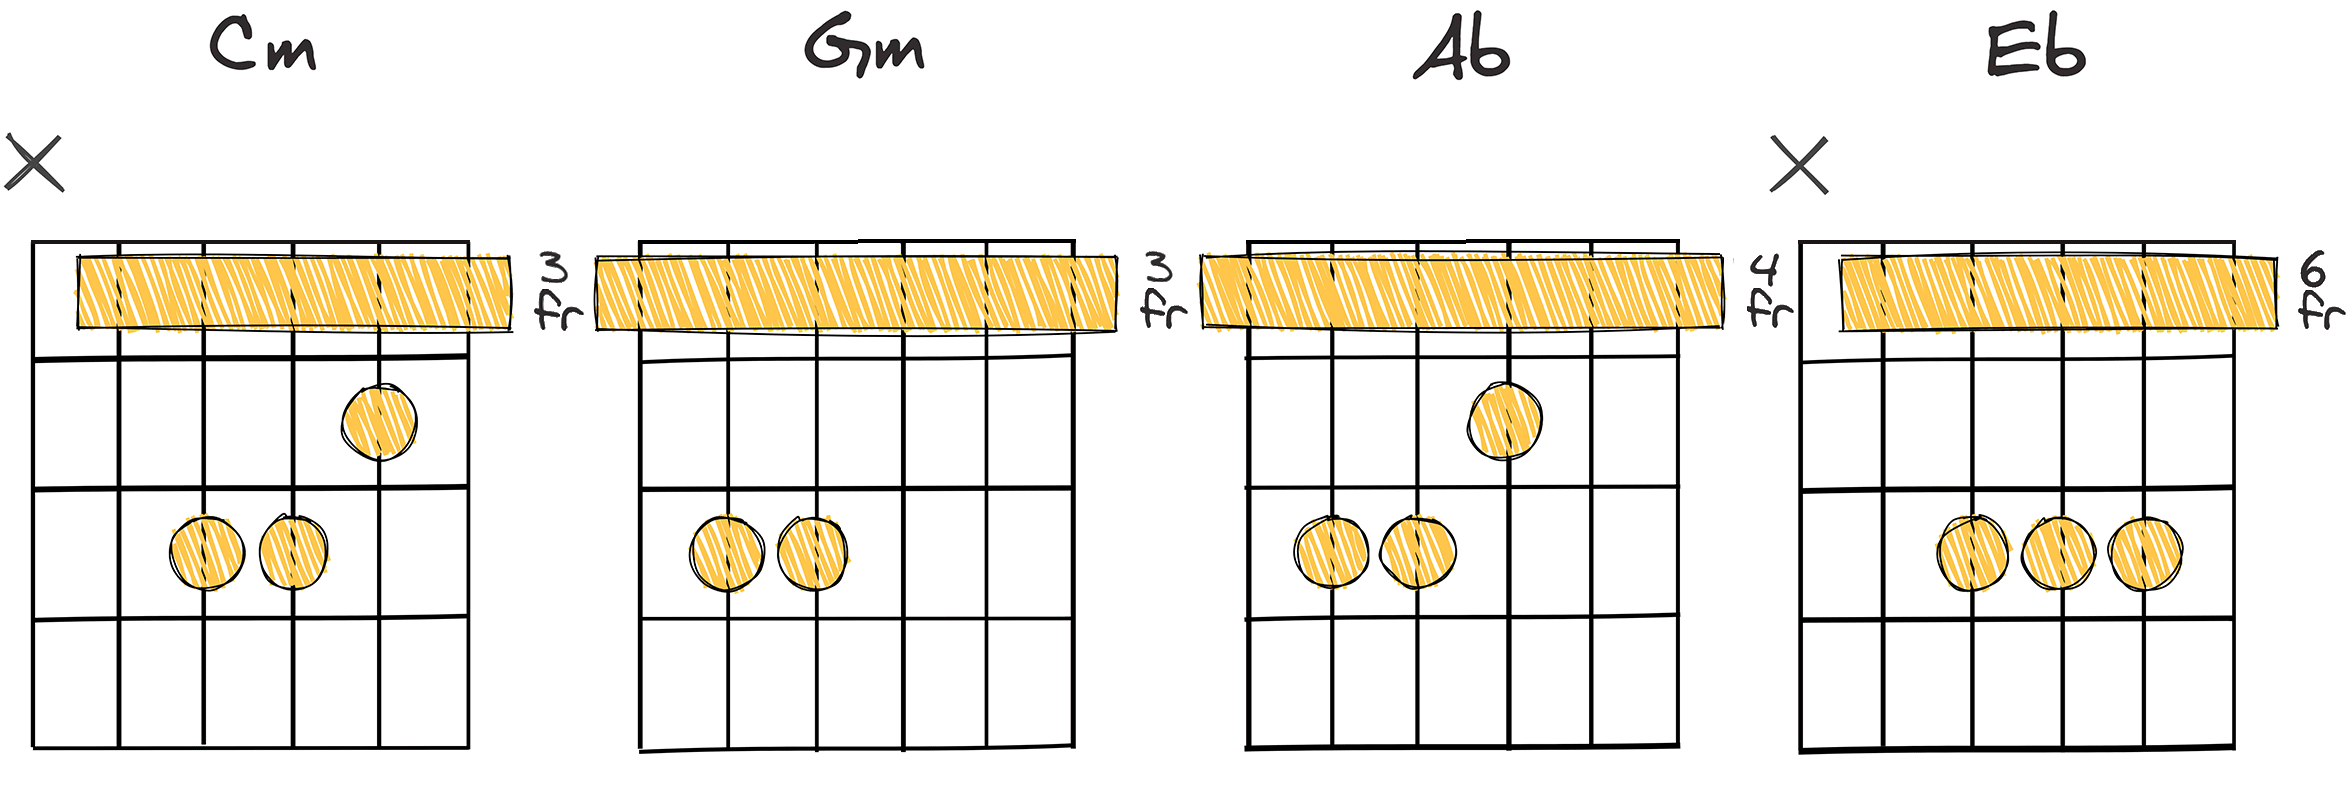 i - v - VI - III (1-5-6-3) chords diagram